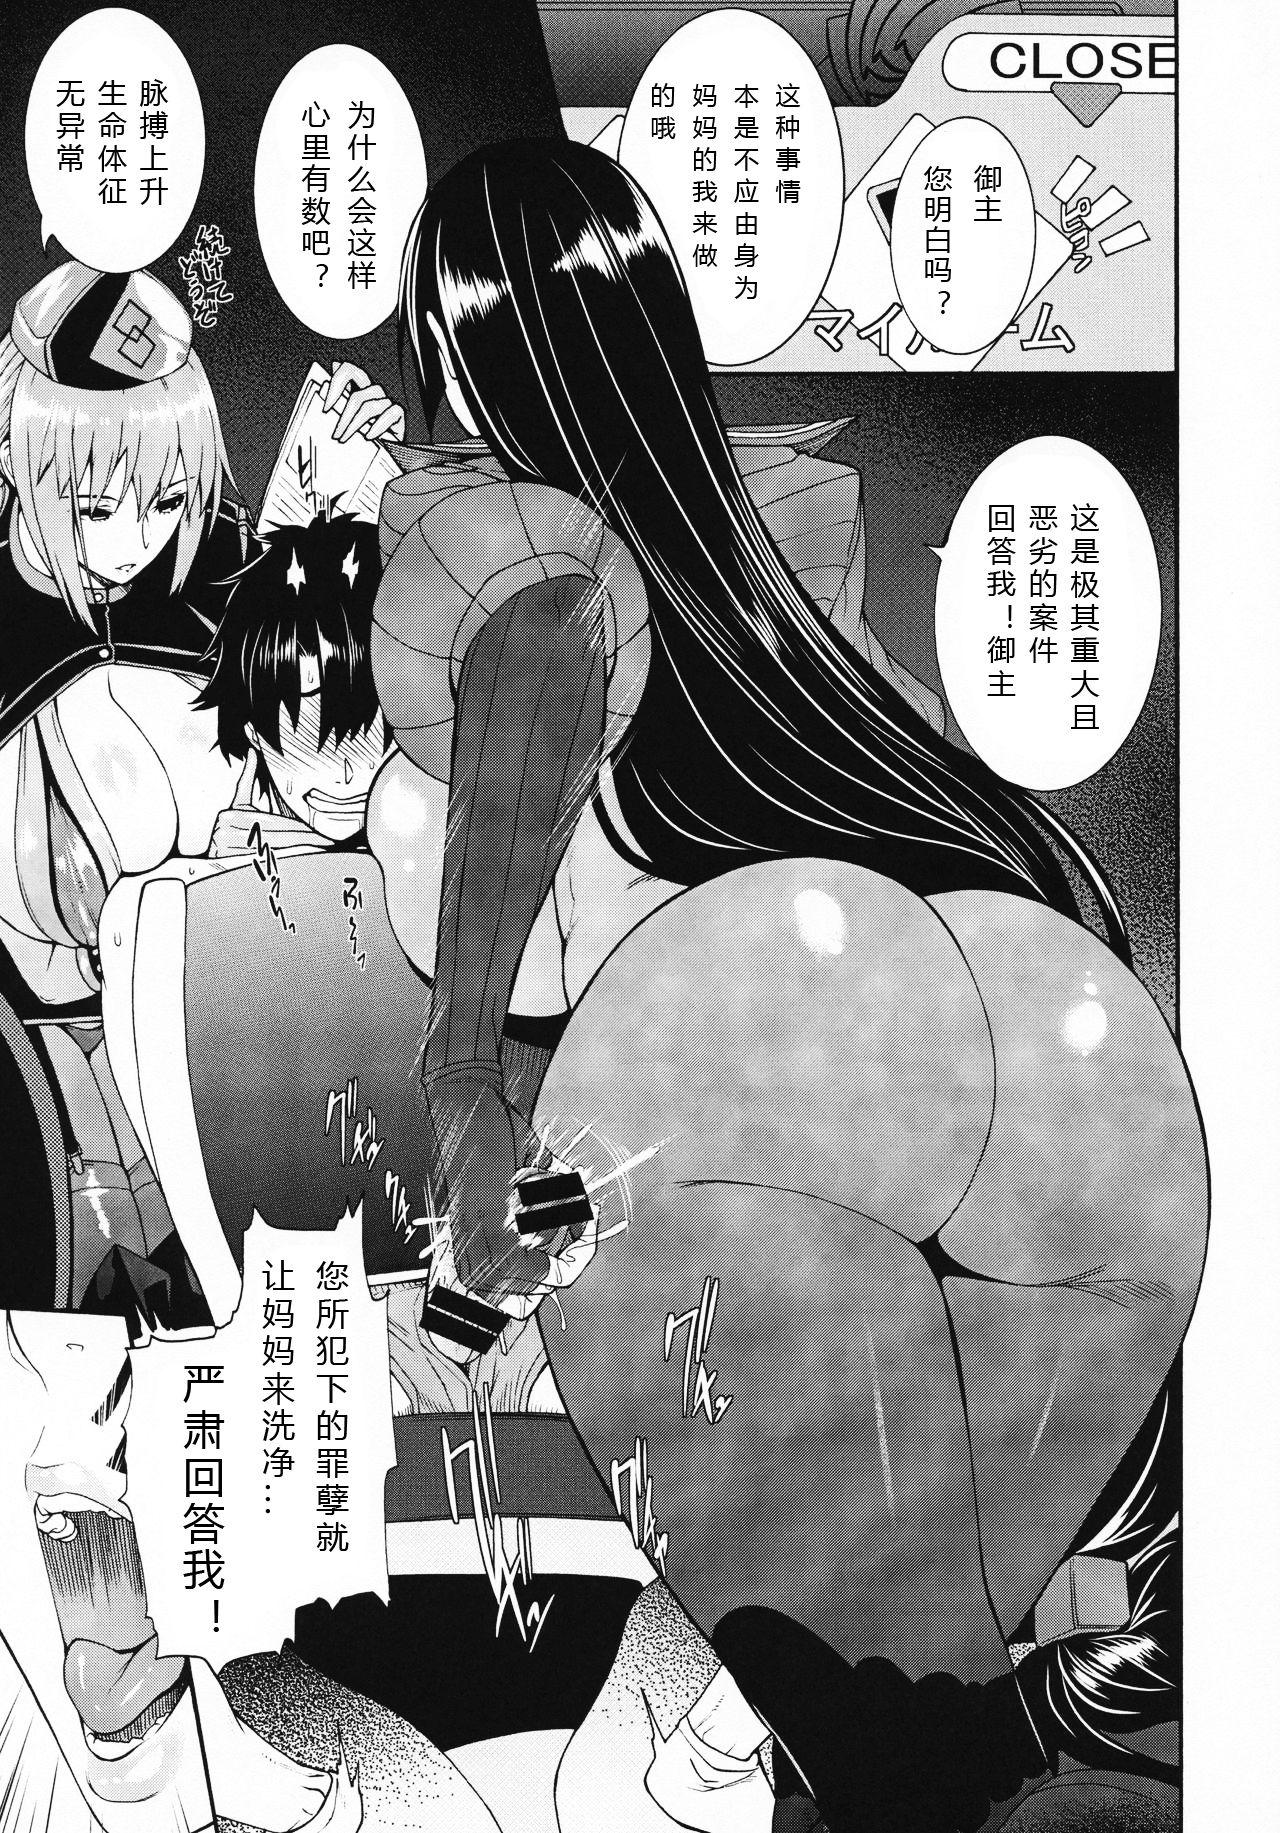 Boyfriend Anata no Haha toshite Misugosemasen!! - Fate grand order Voyeursex - Page 4